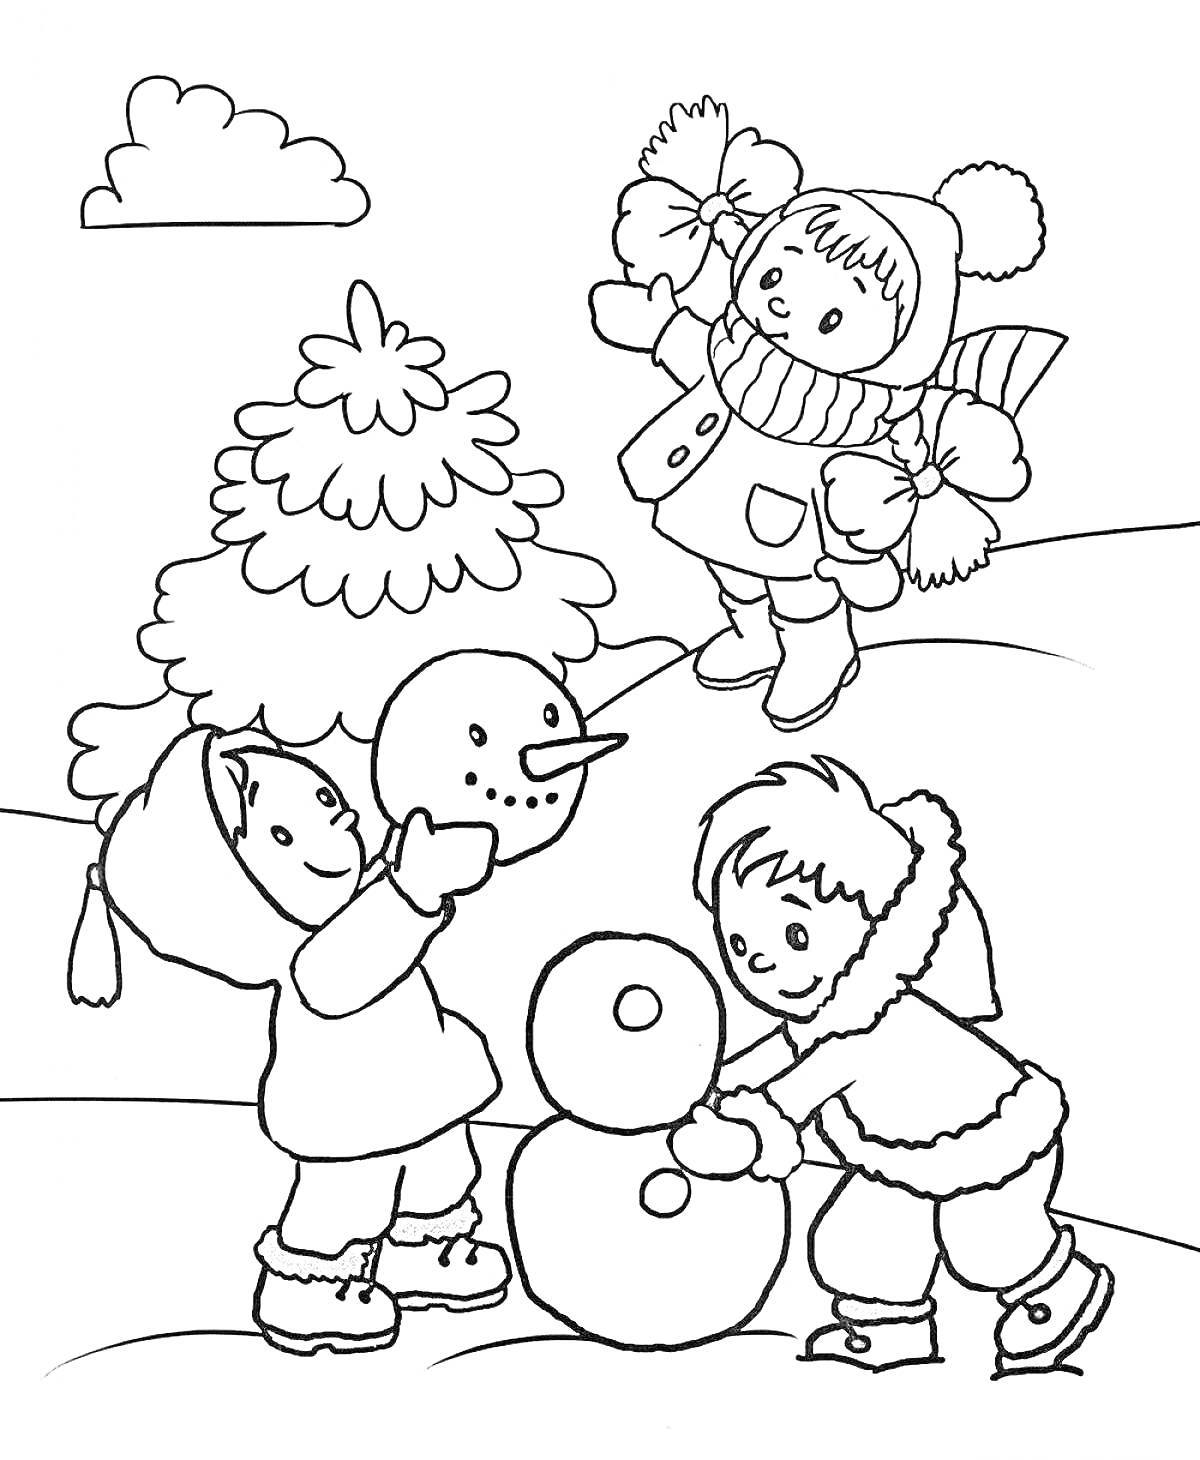 Дети лепят снеговика, девочка на горке, ёлка и облако